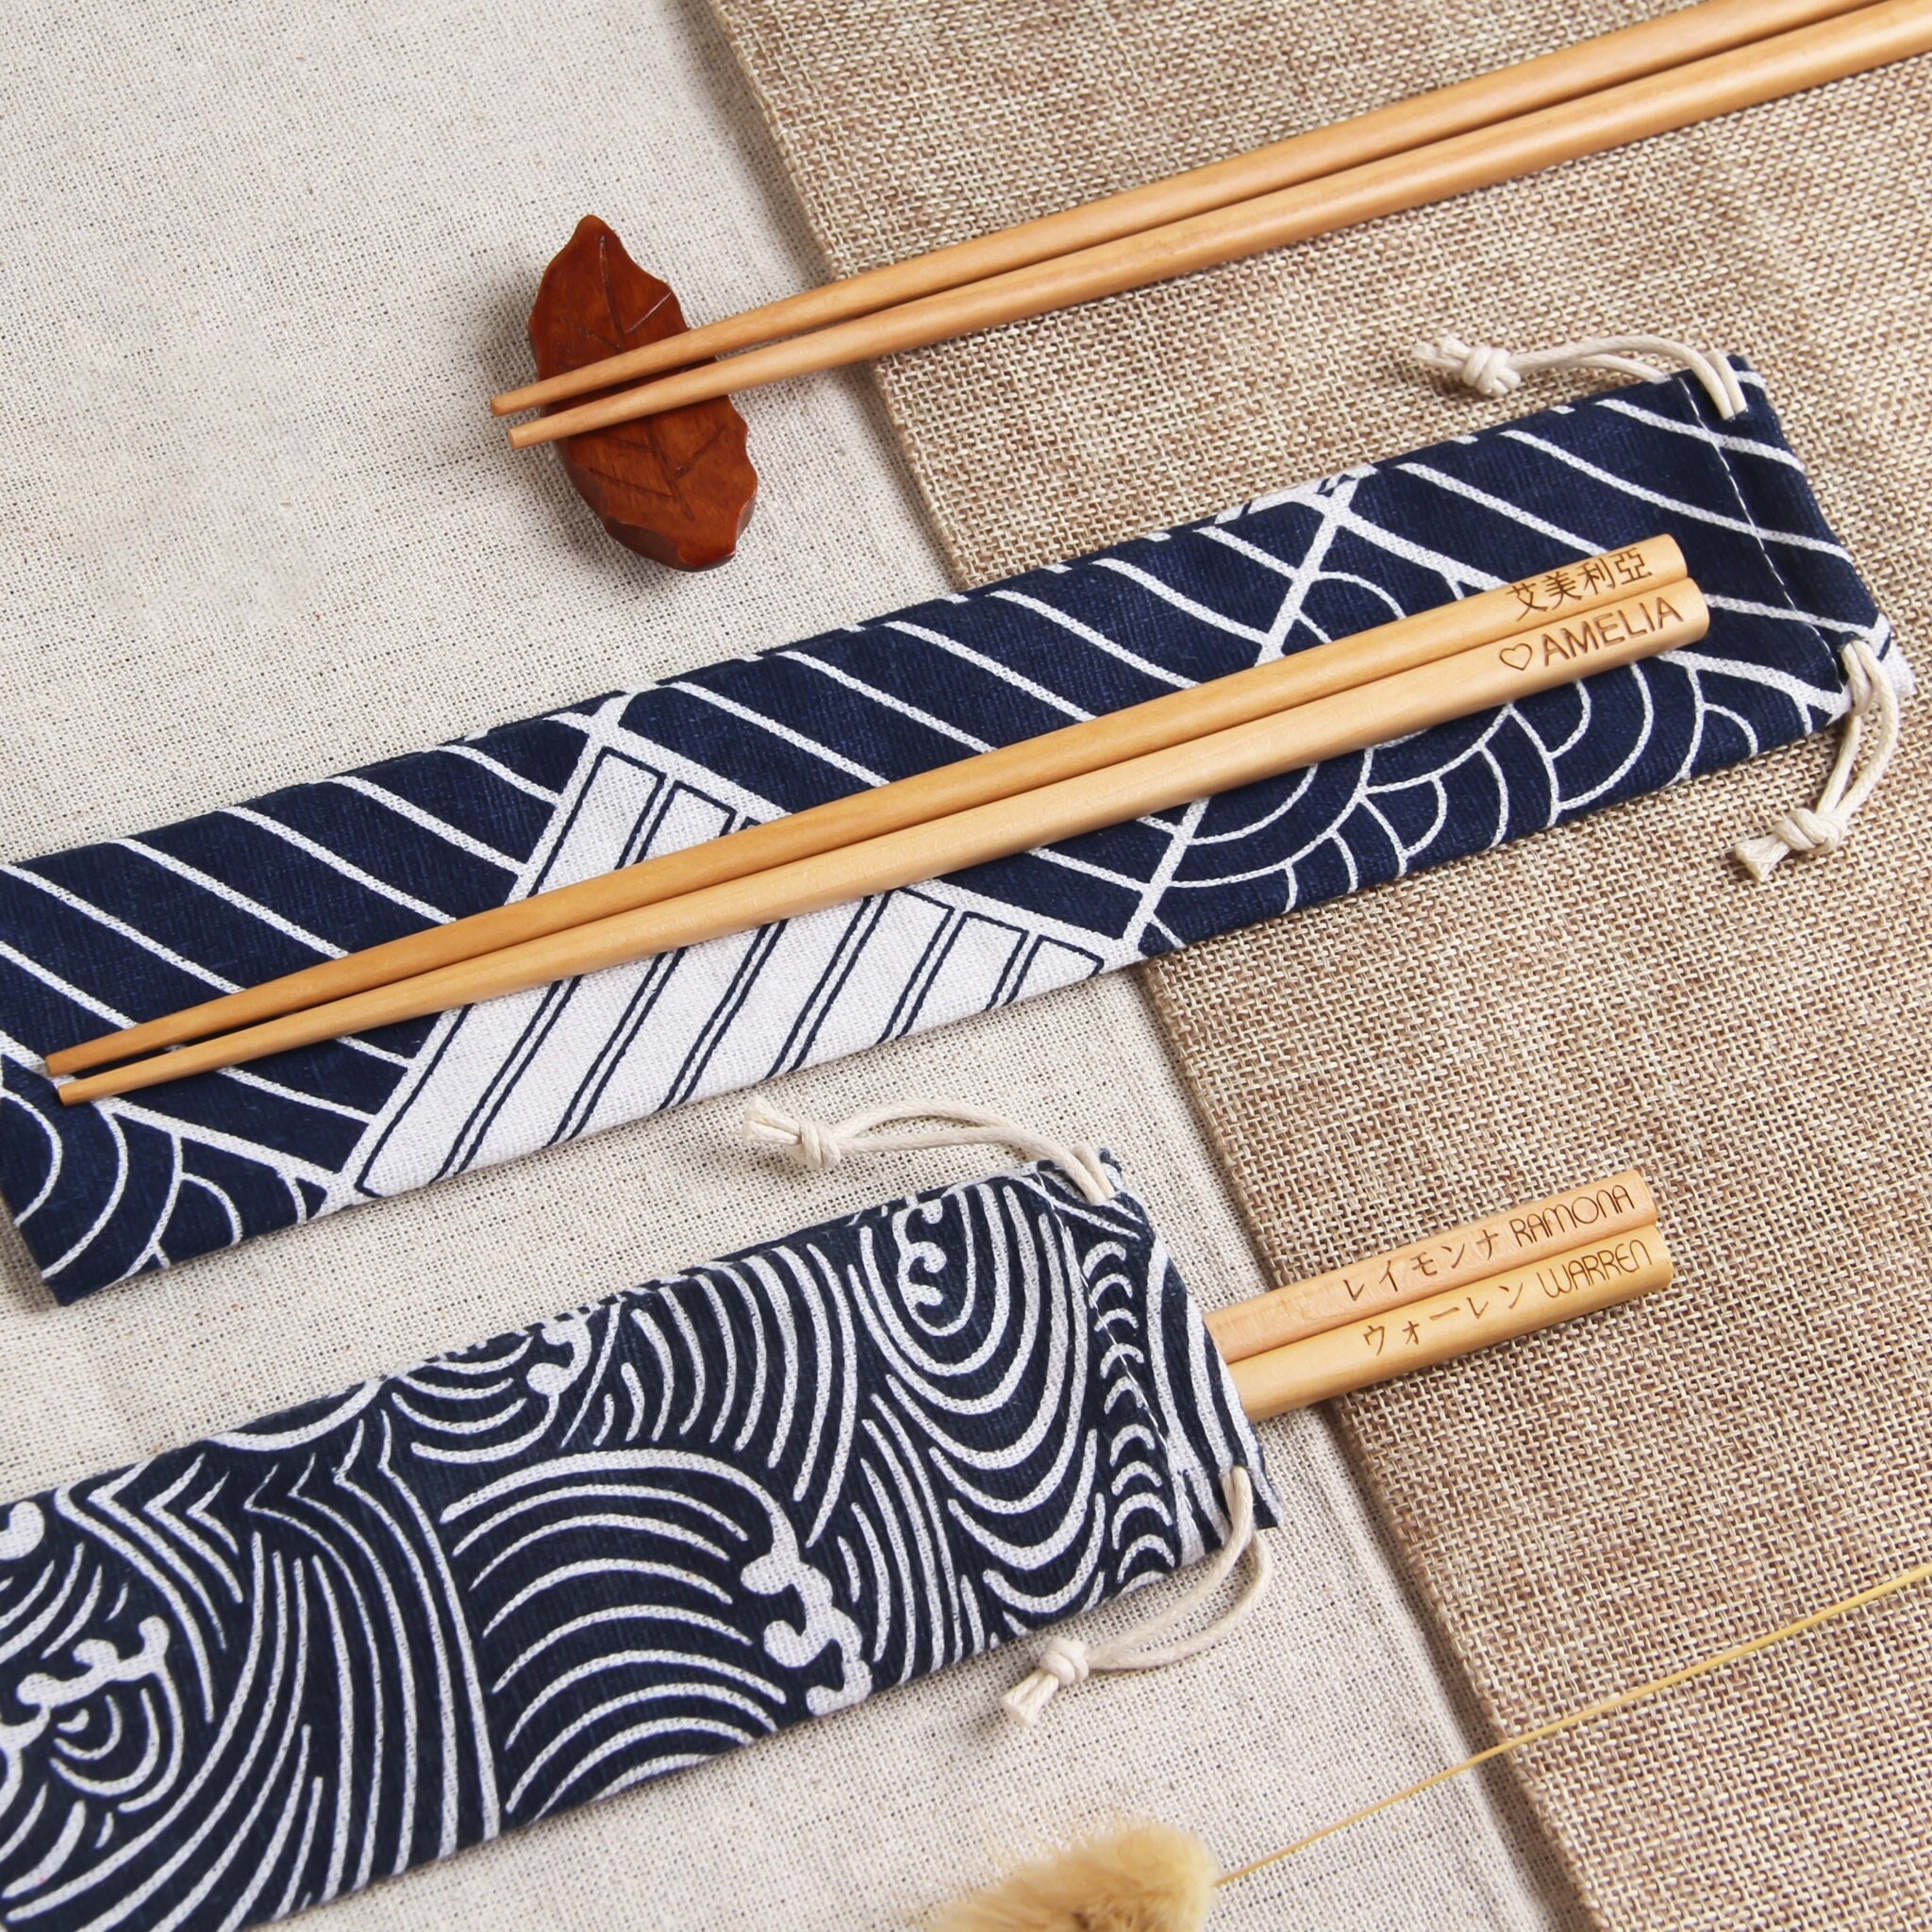 Bamboo Chopsticks 